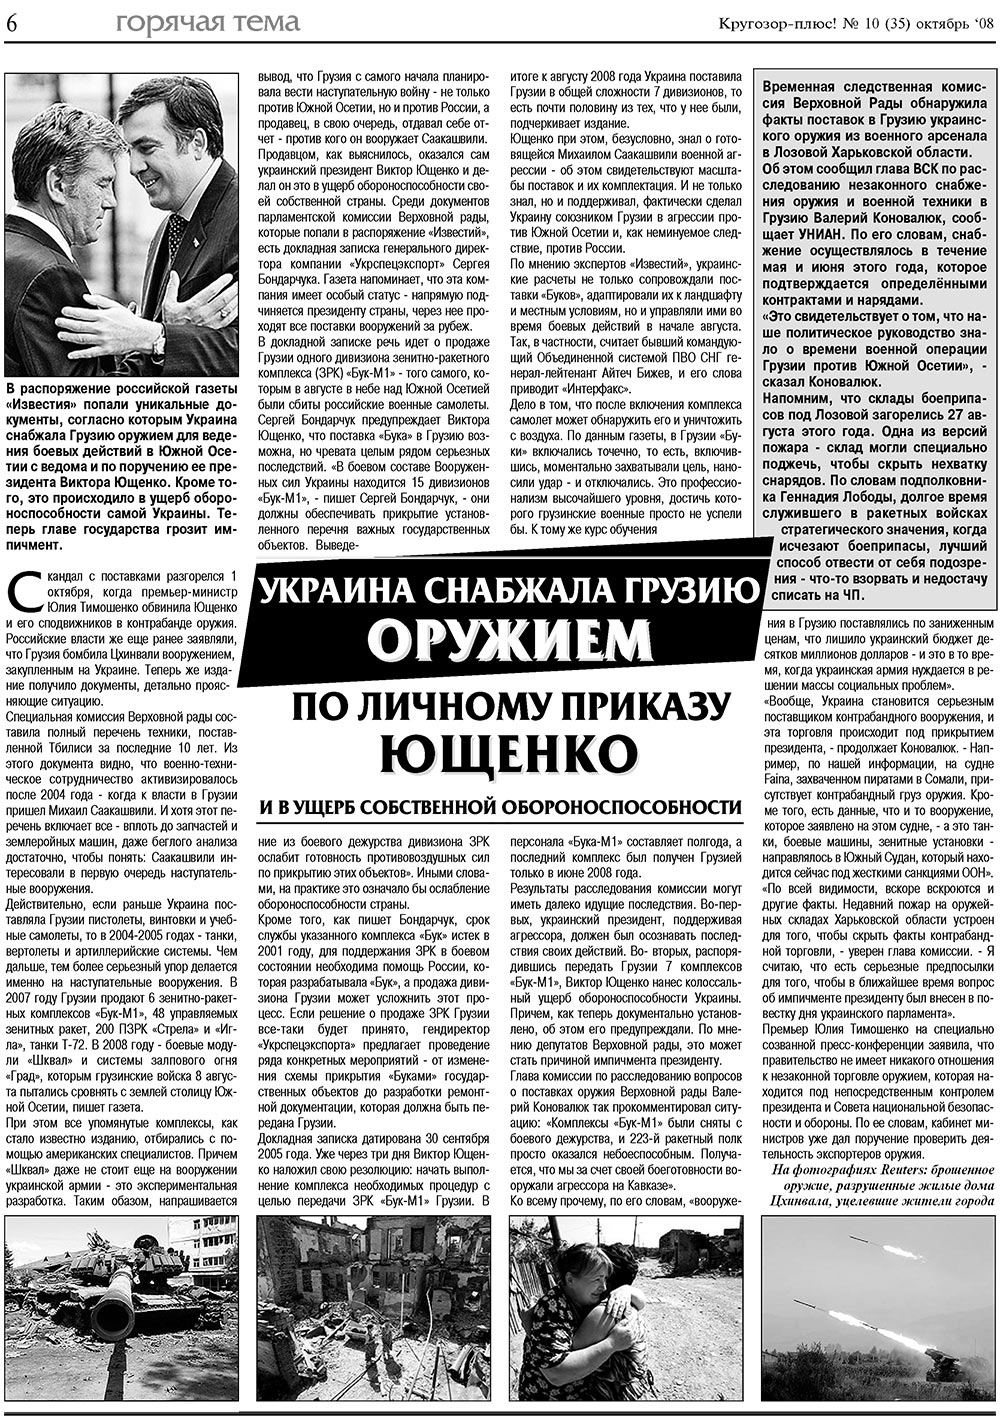 Кругозор плюс!, газета. 2008 №10 стр.6